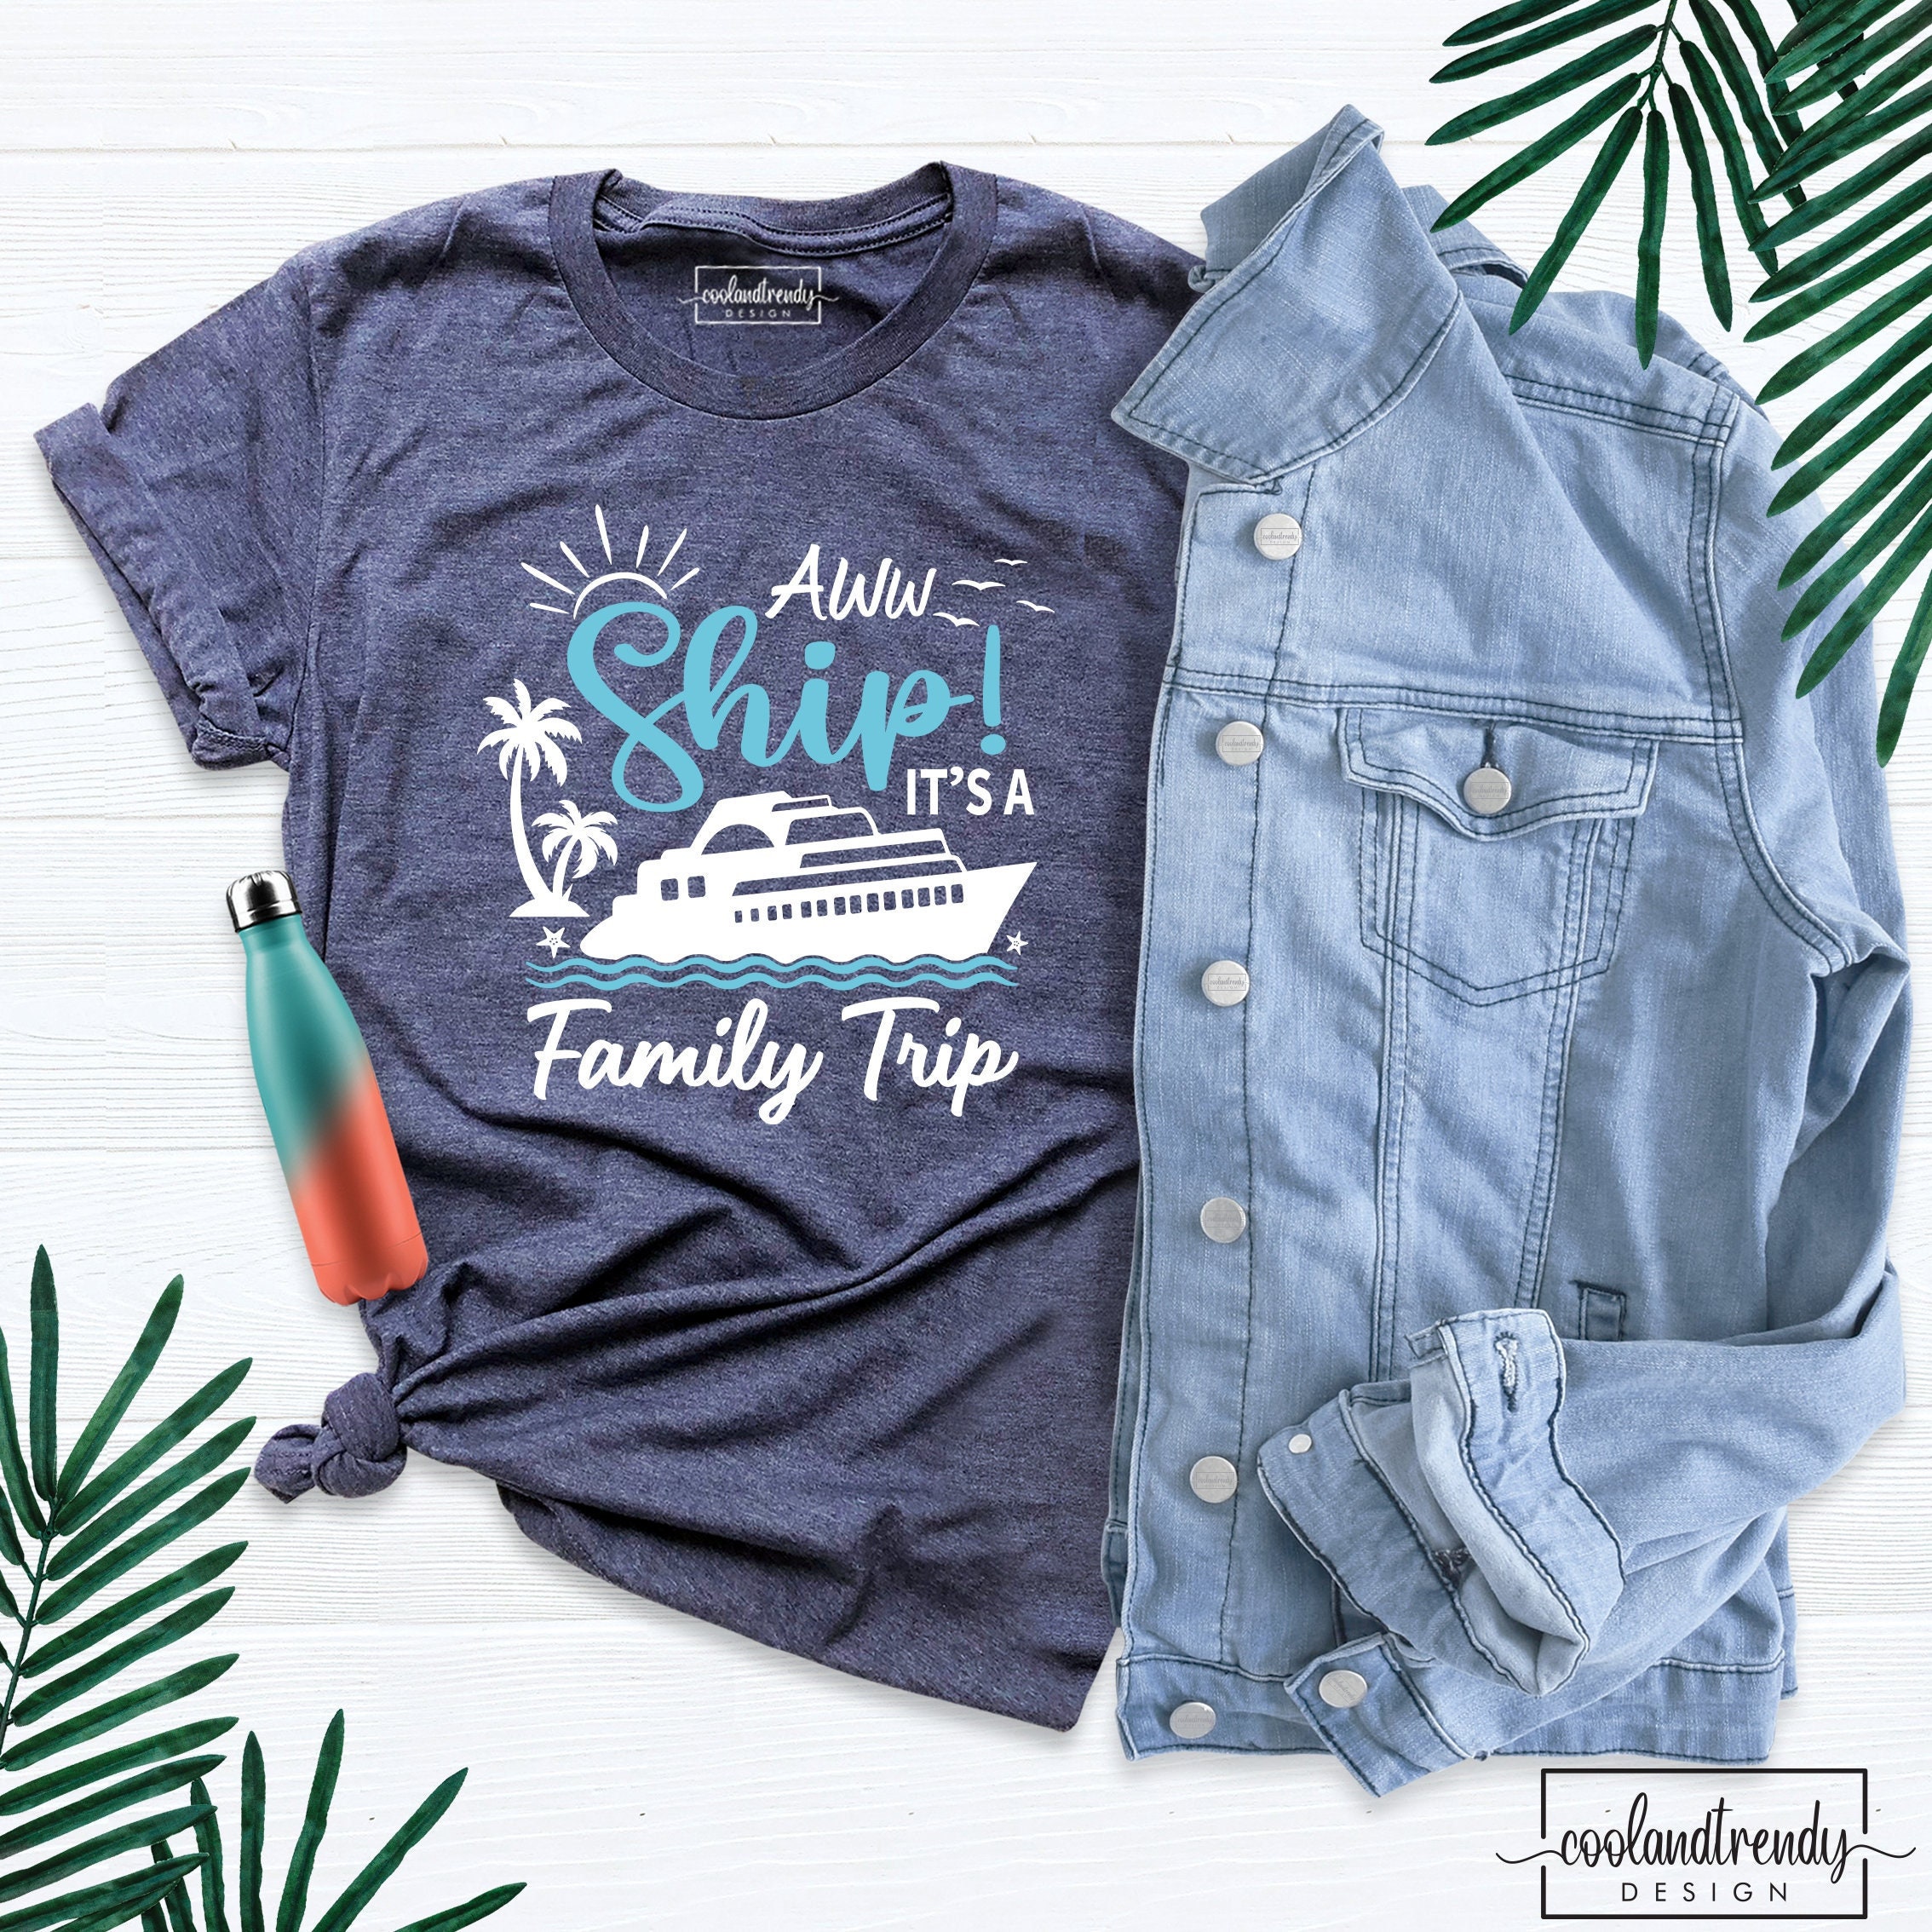 Cruise Shirts, Family Cruise Trip Shirts, Aw Ship! It's a Family Trip Shirts